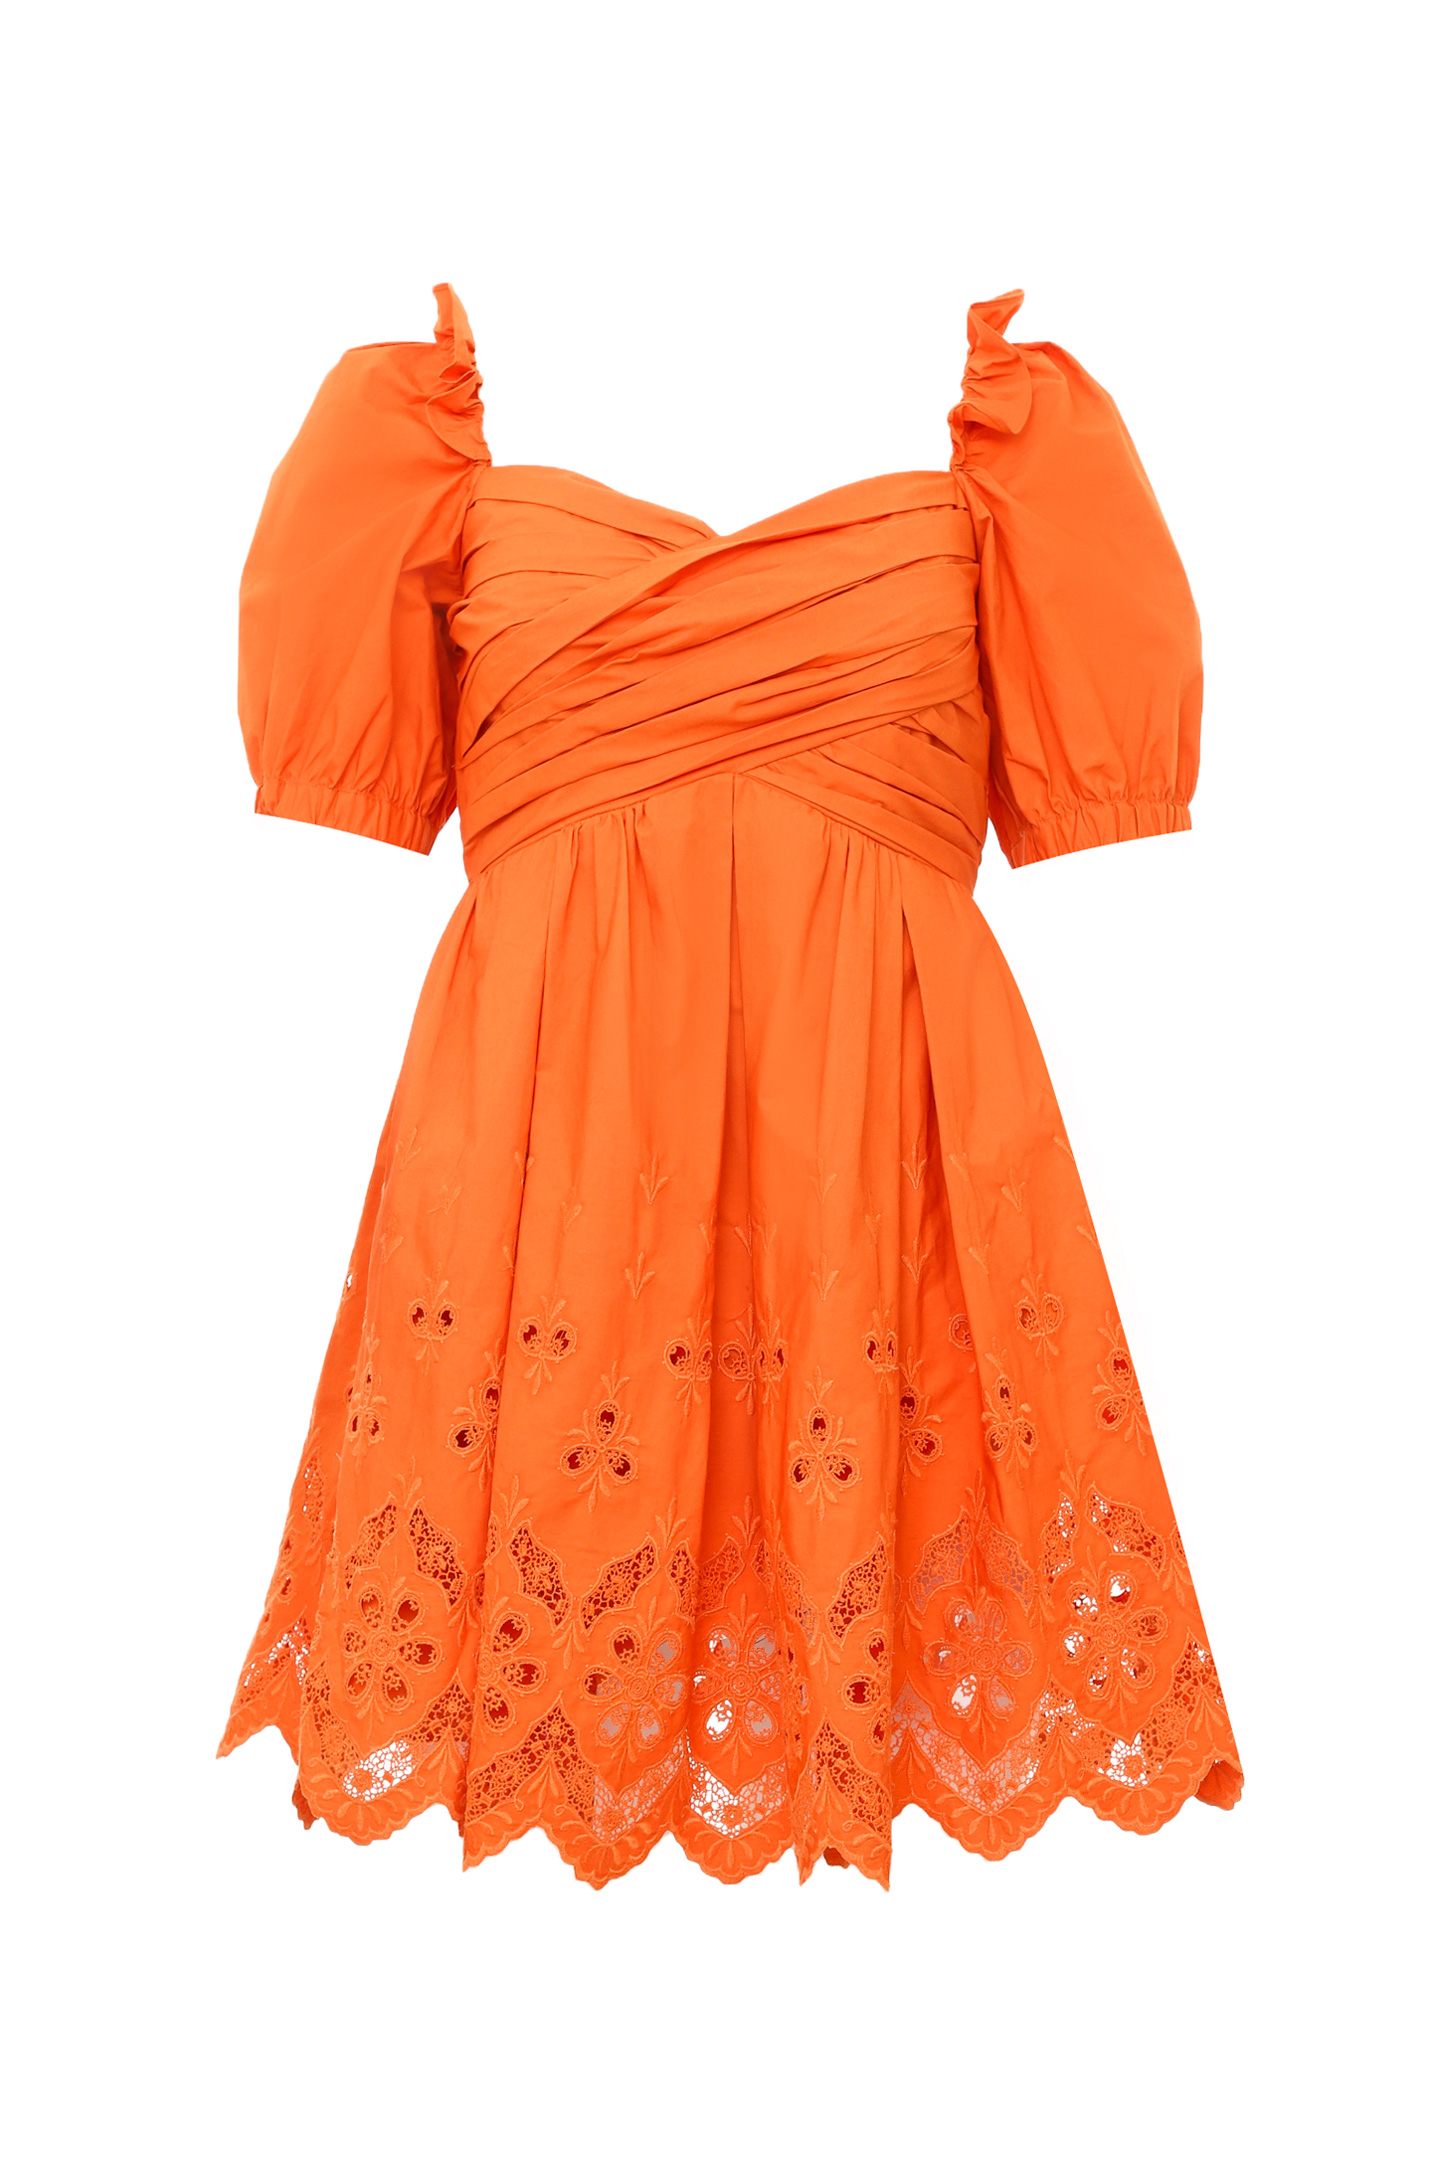 Платье SELF PORTRAIT RS22-156, цвет: Оранжевый, Женский